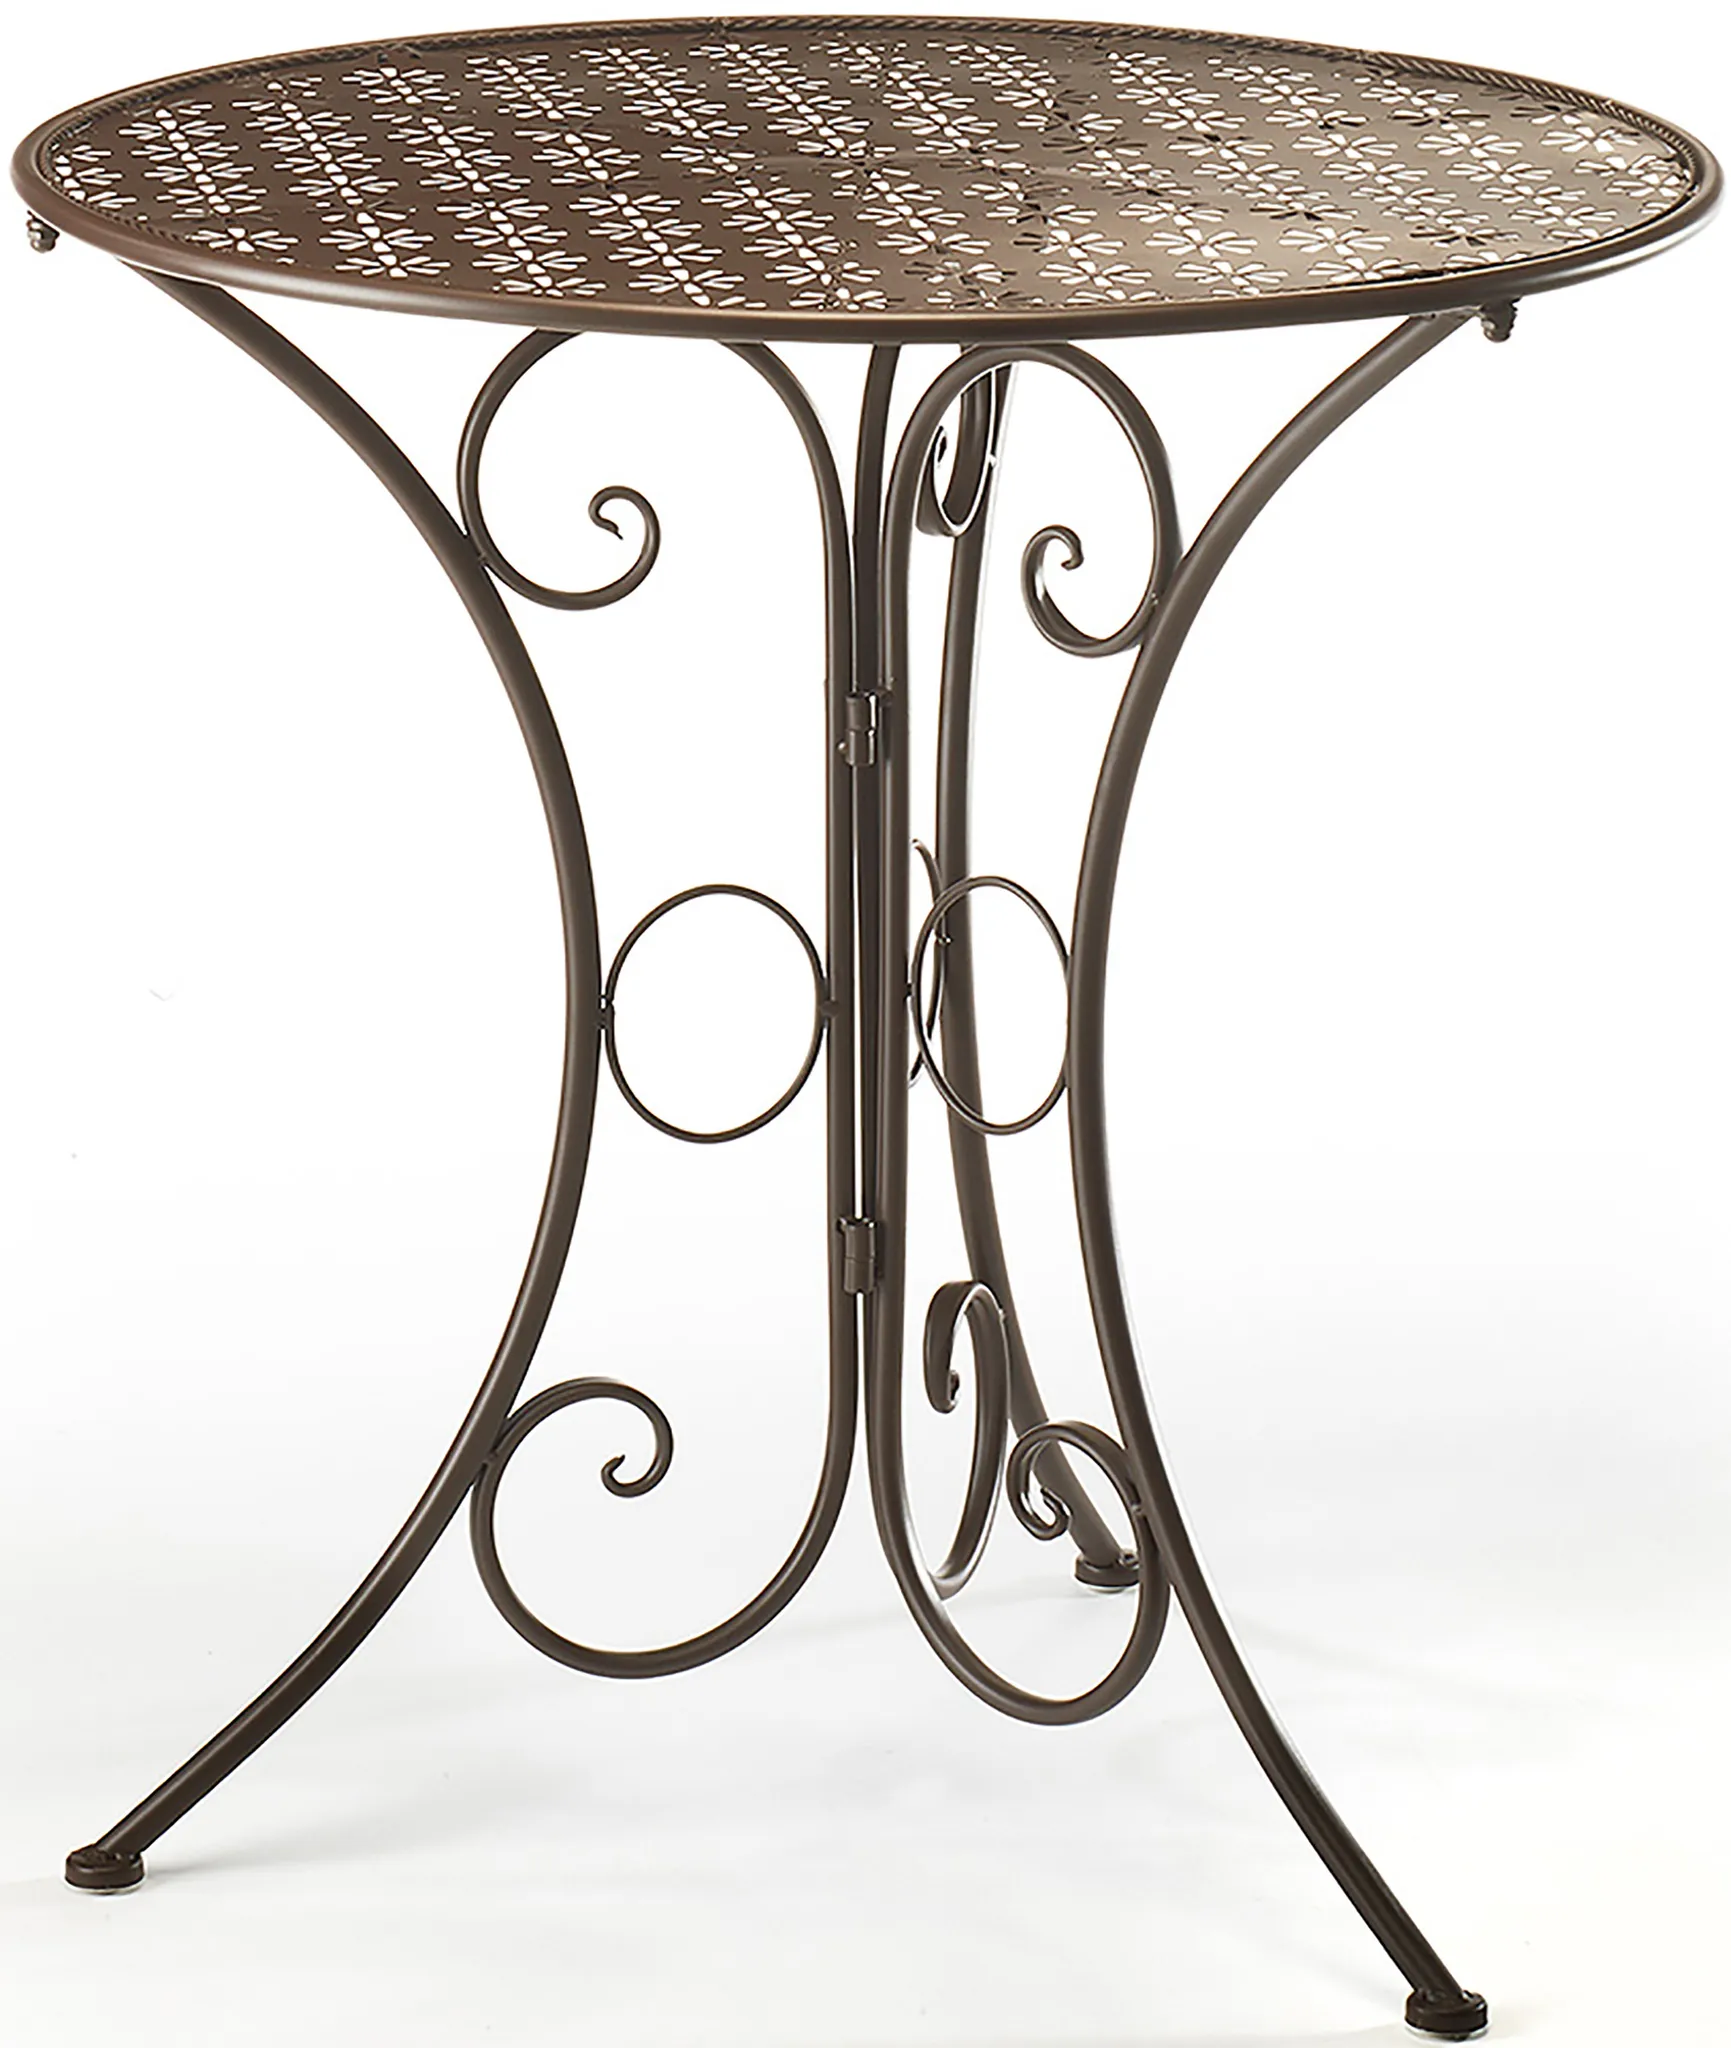 Tisch aus Metall braun 60cm Gartentisch